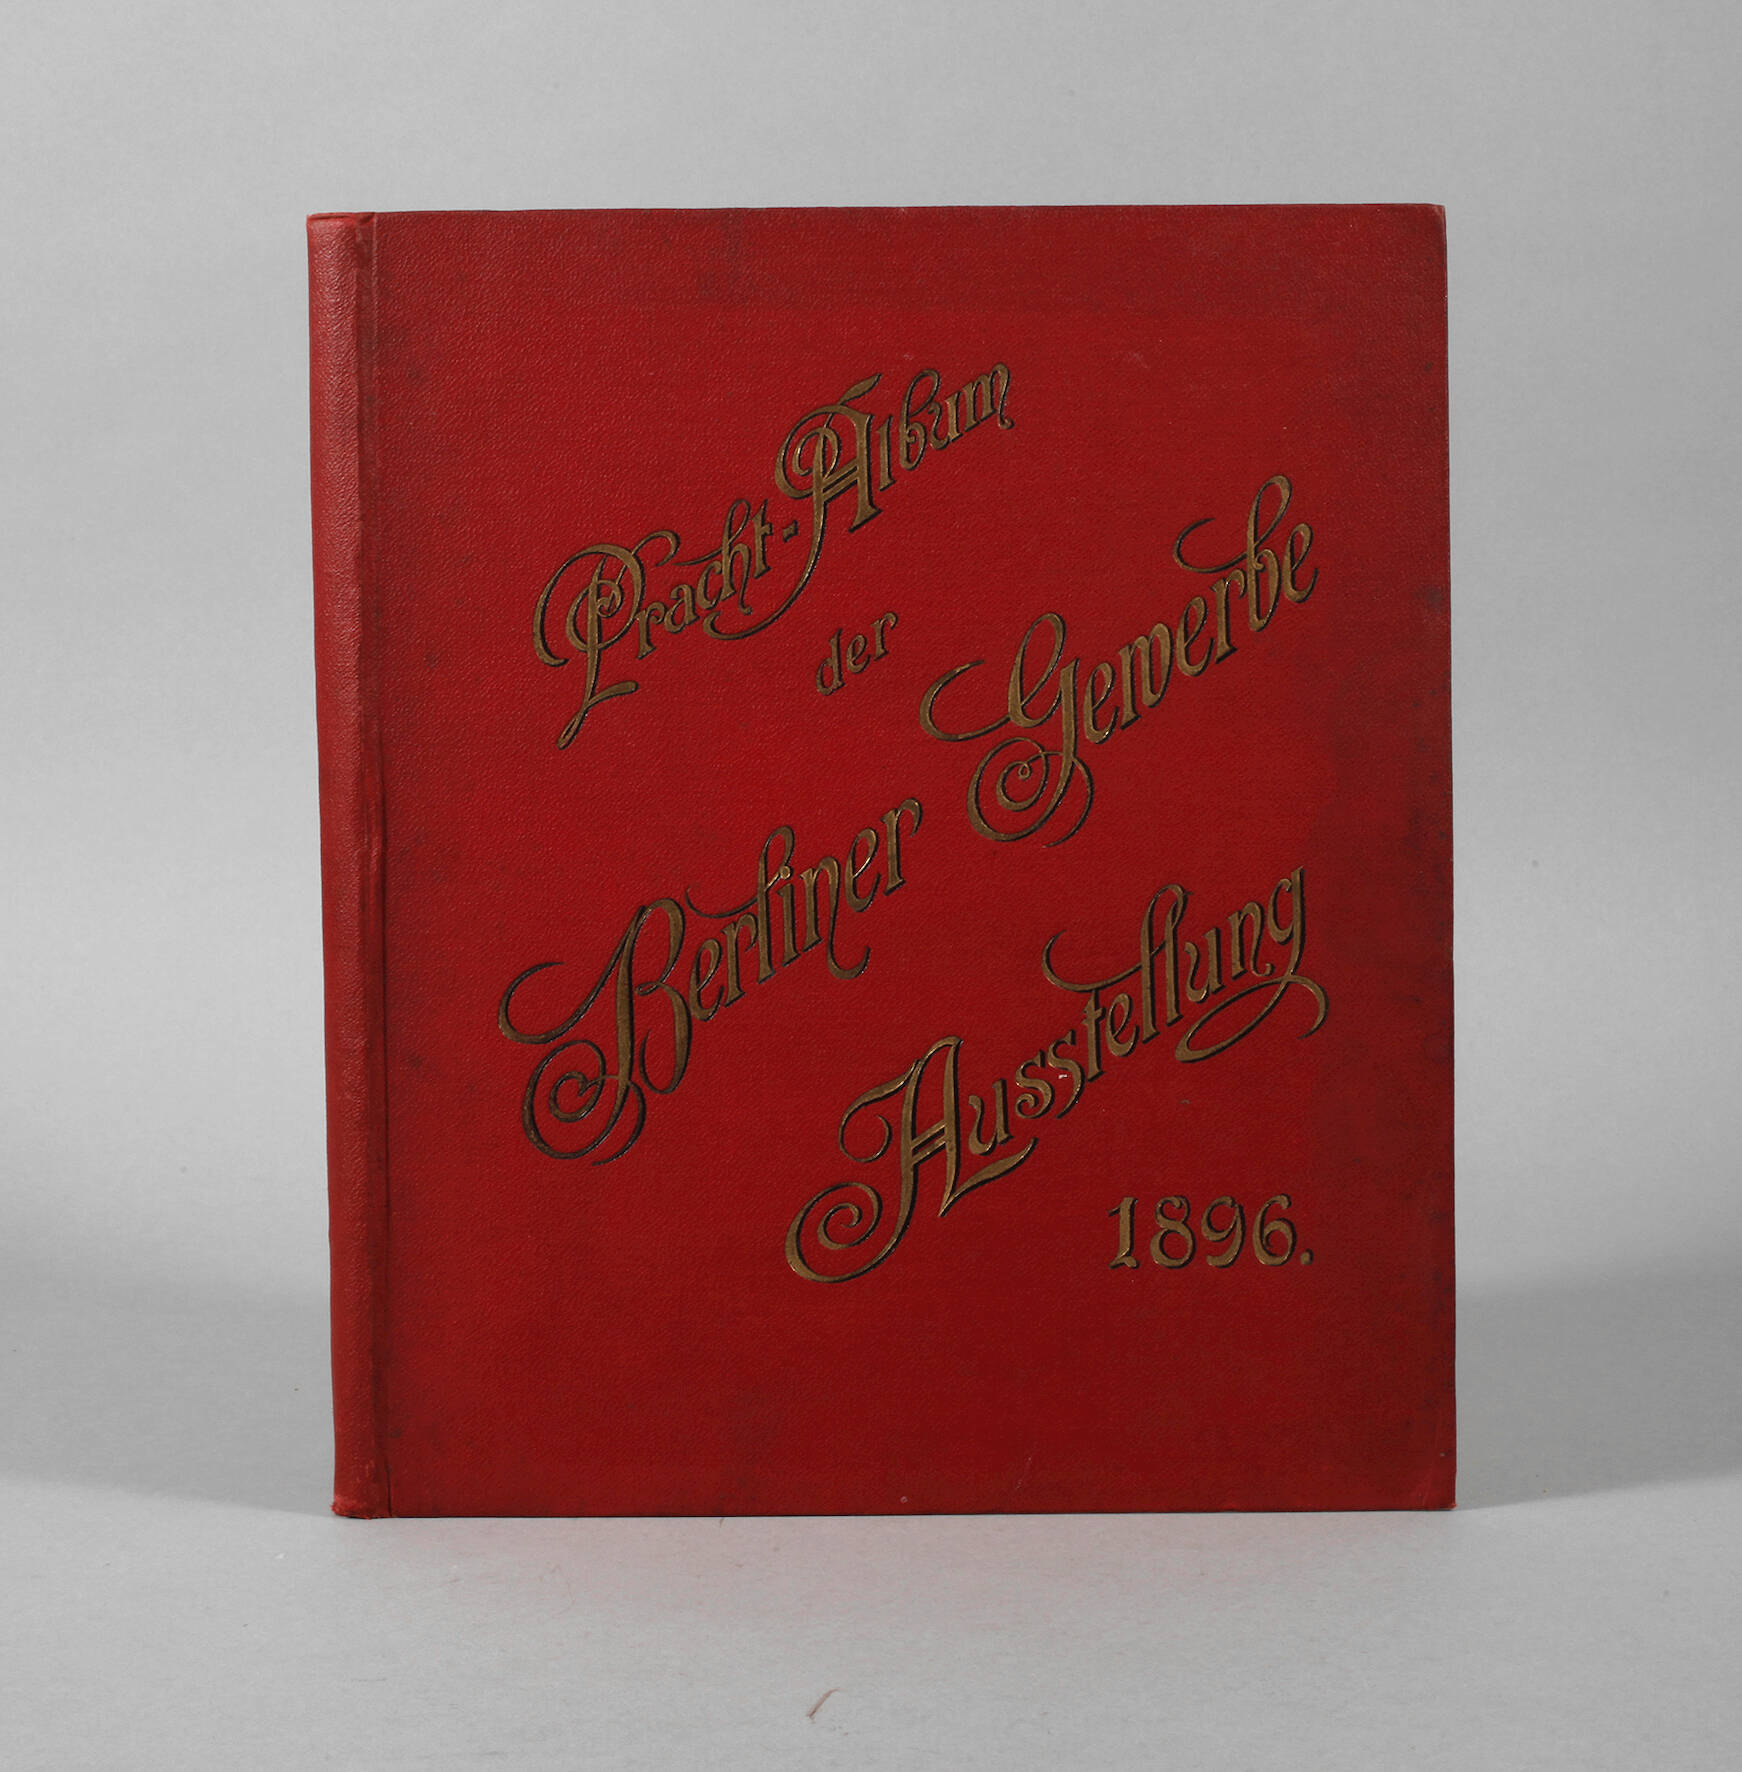 Prachtalbum der Berliner Gewerbeausstellung 1896